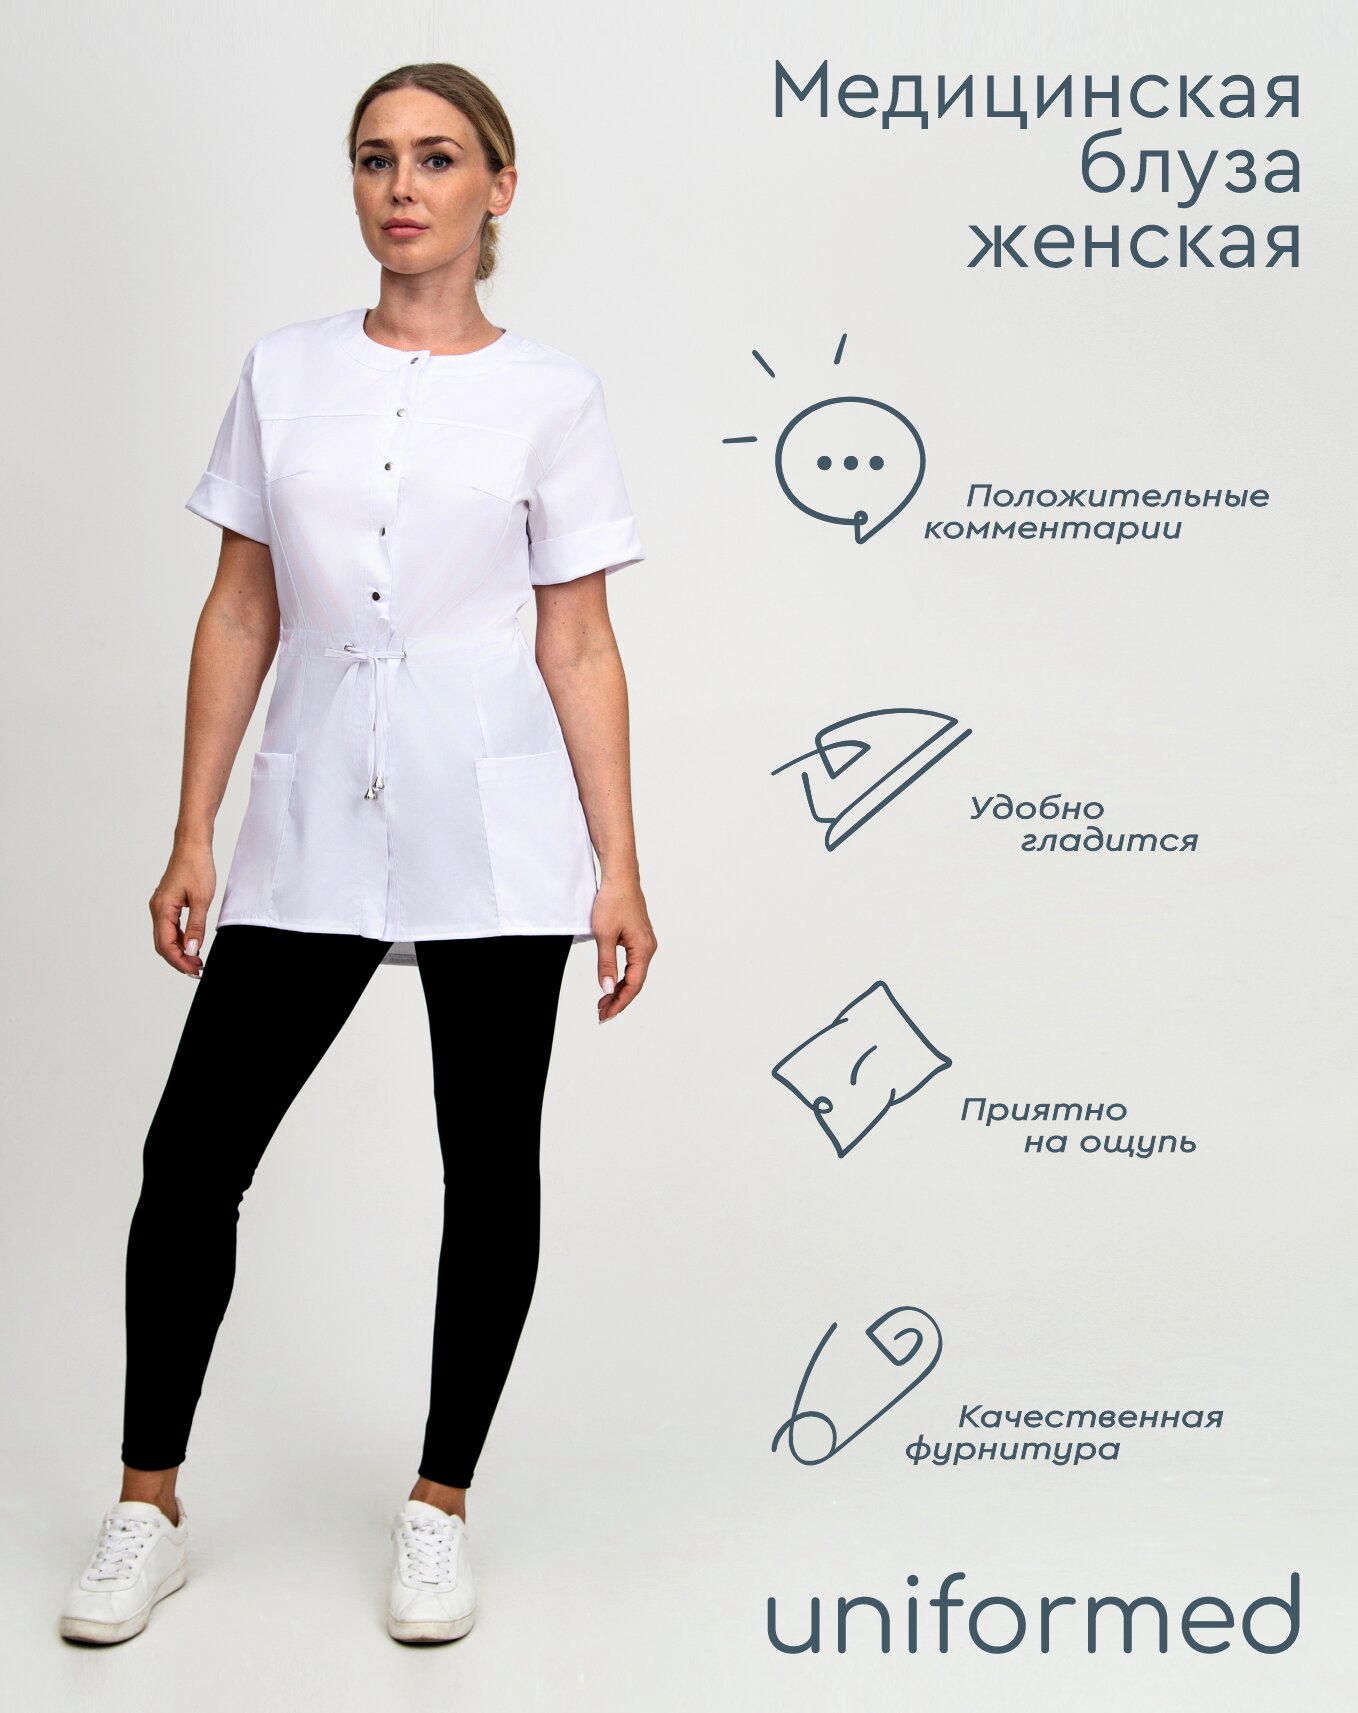 Медицинская женская блуза 404.4.6 Uniformed, ткань сатори стрейч, рукав короткий, цвет белый, рост 170-176, размер 42